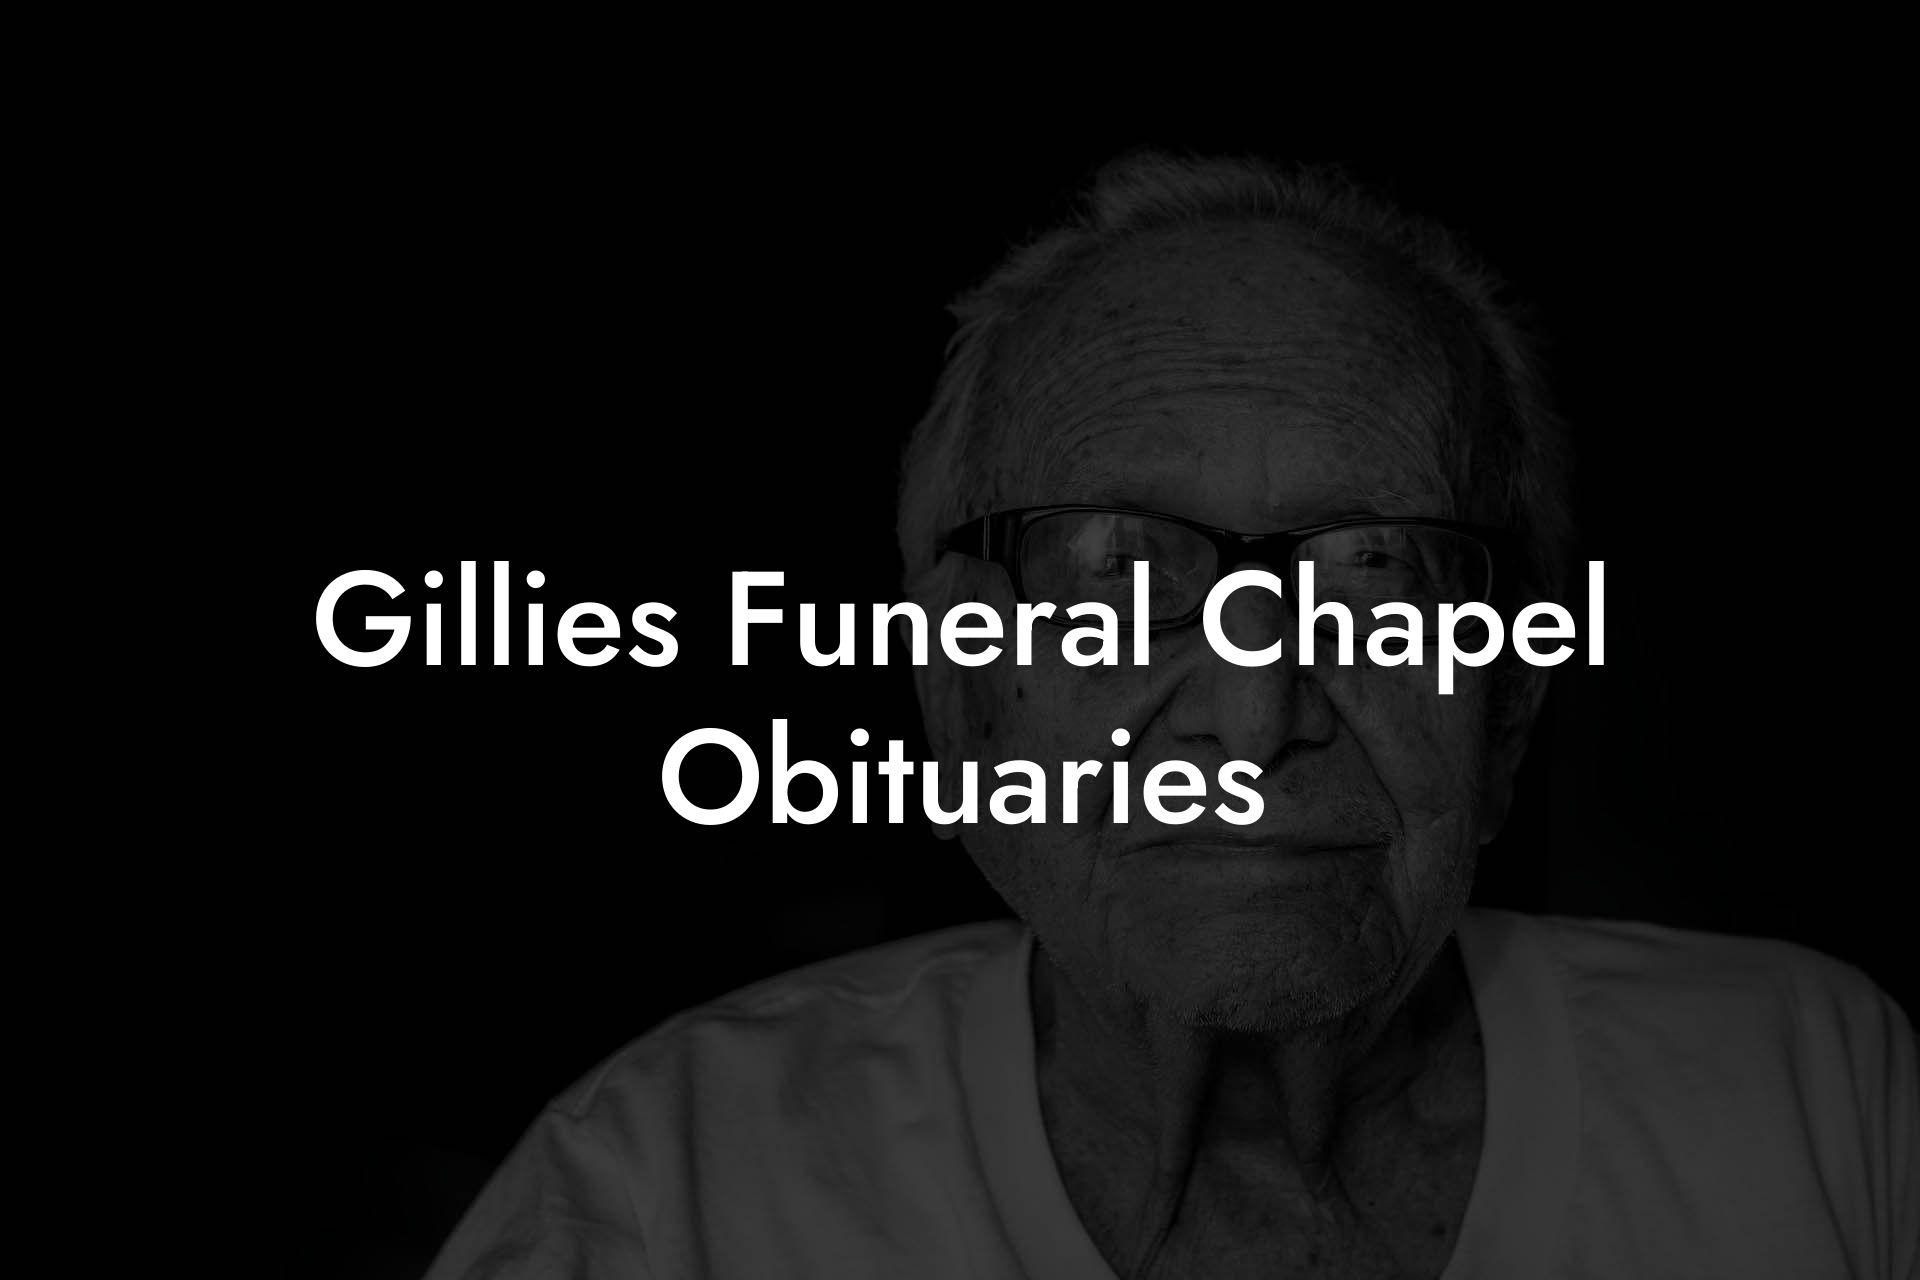 Gillies Funeral Chapel Obituaries